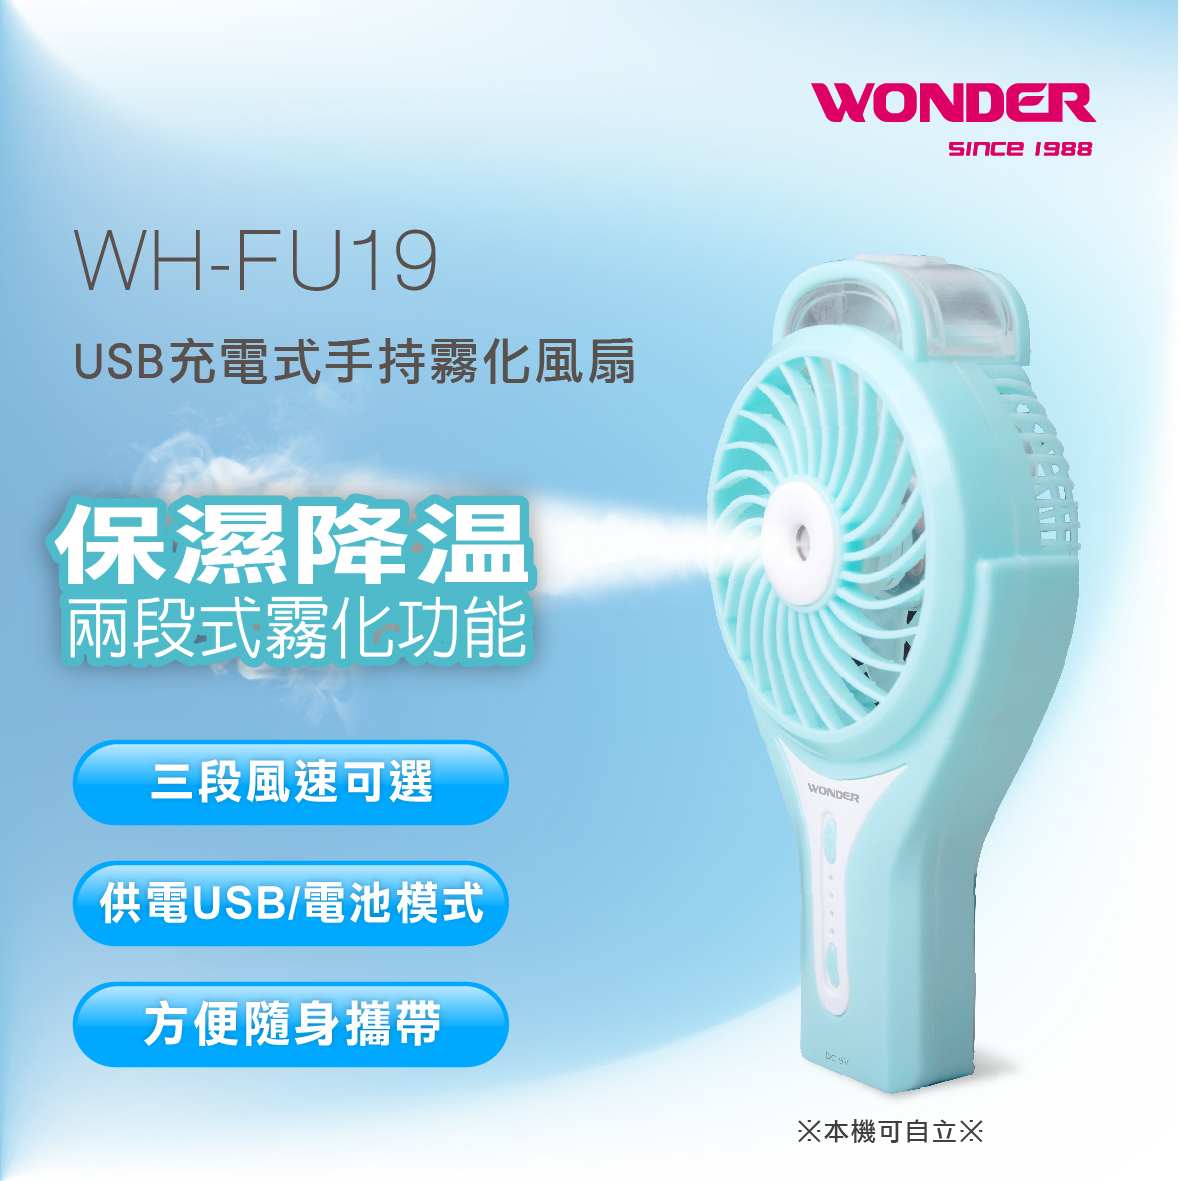 WONDER旺德 USB充電式手持霧化風扇 小風扇 風扇 WH-FU19 